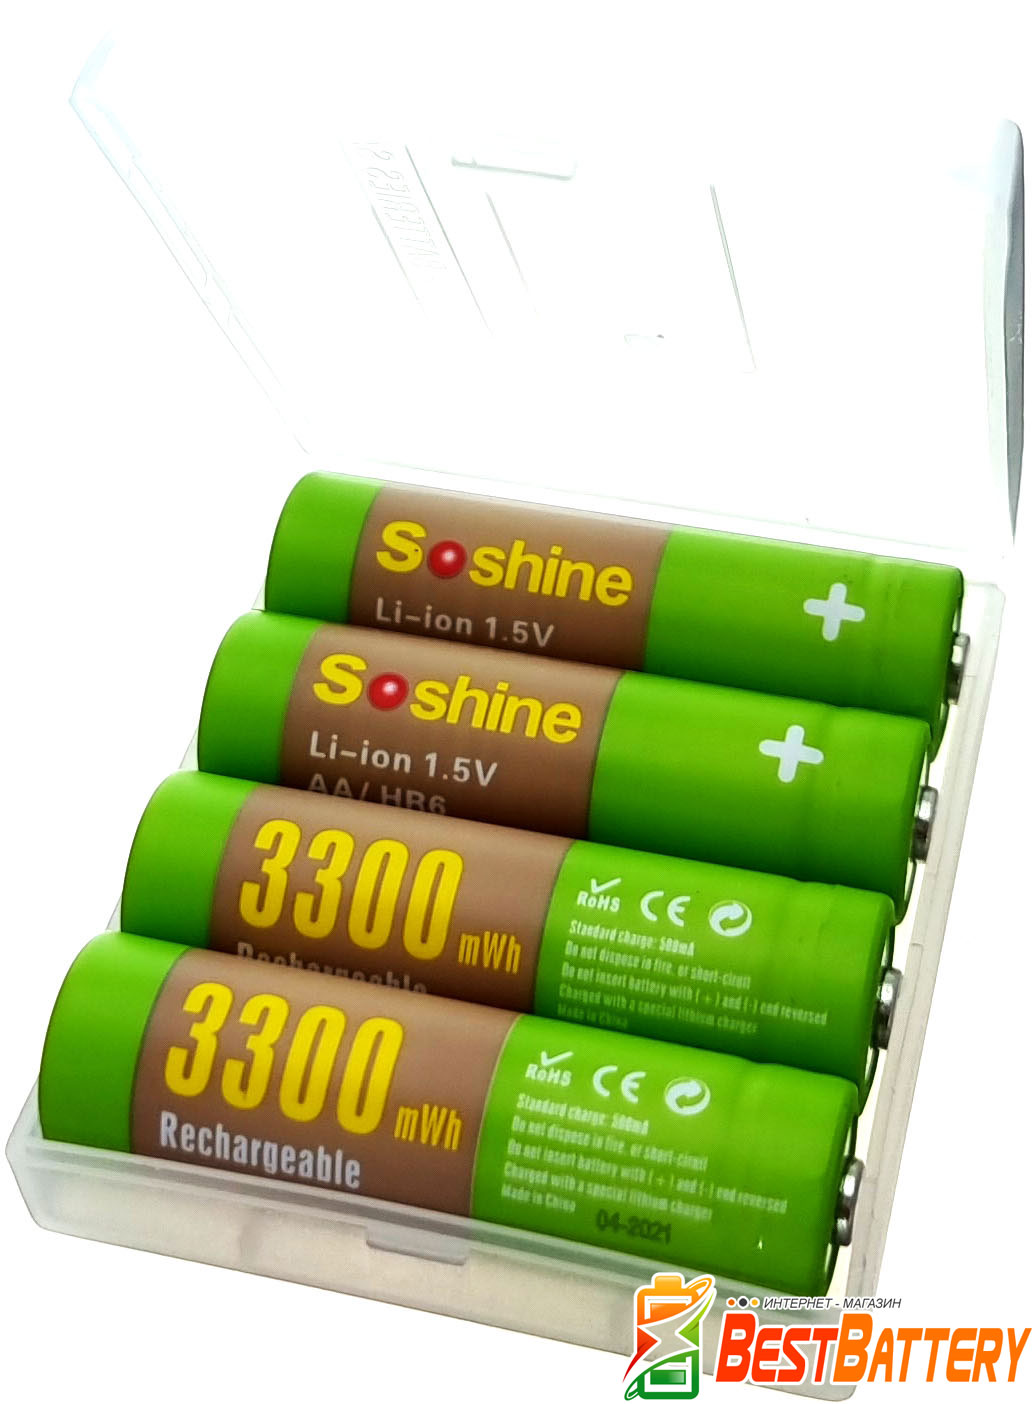 Soshine Li-Ion 1.5V AA 3300 mWh 4 шт. в боксе  - пальчиковые литий-ионные аккумуляторы нового поколения на 1,5В.